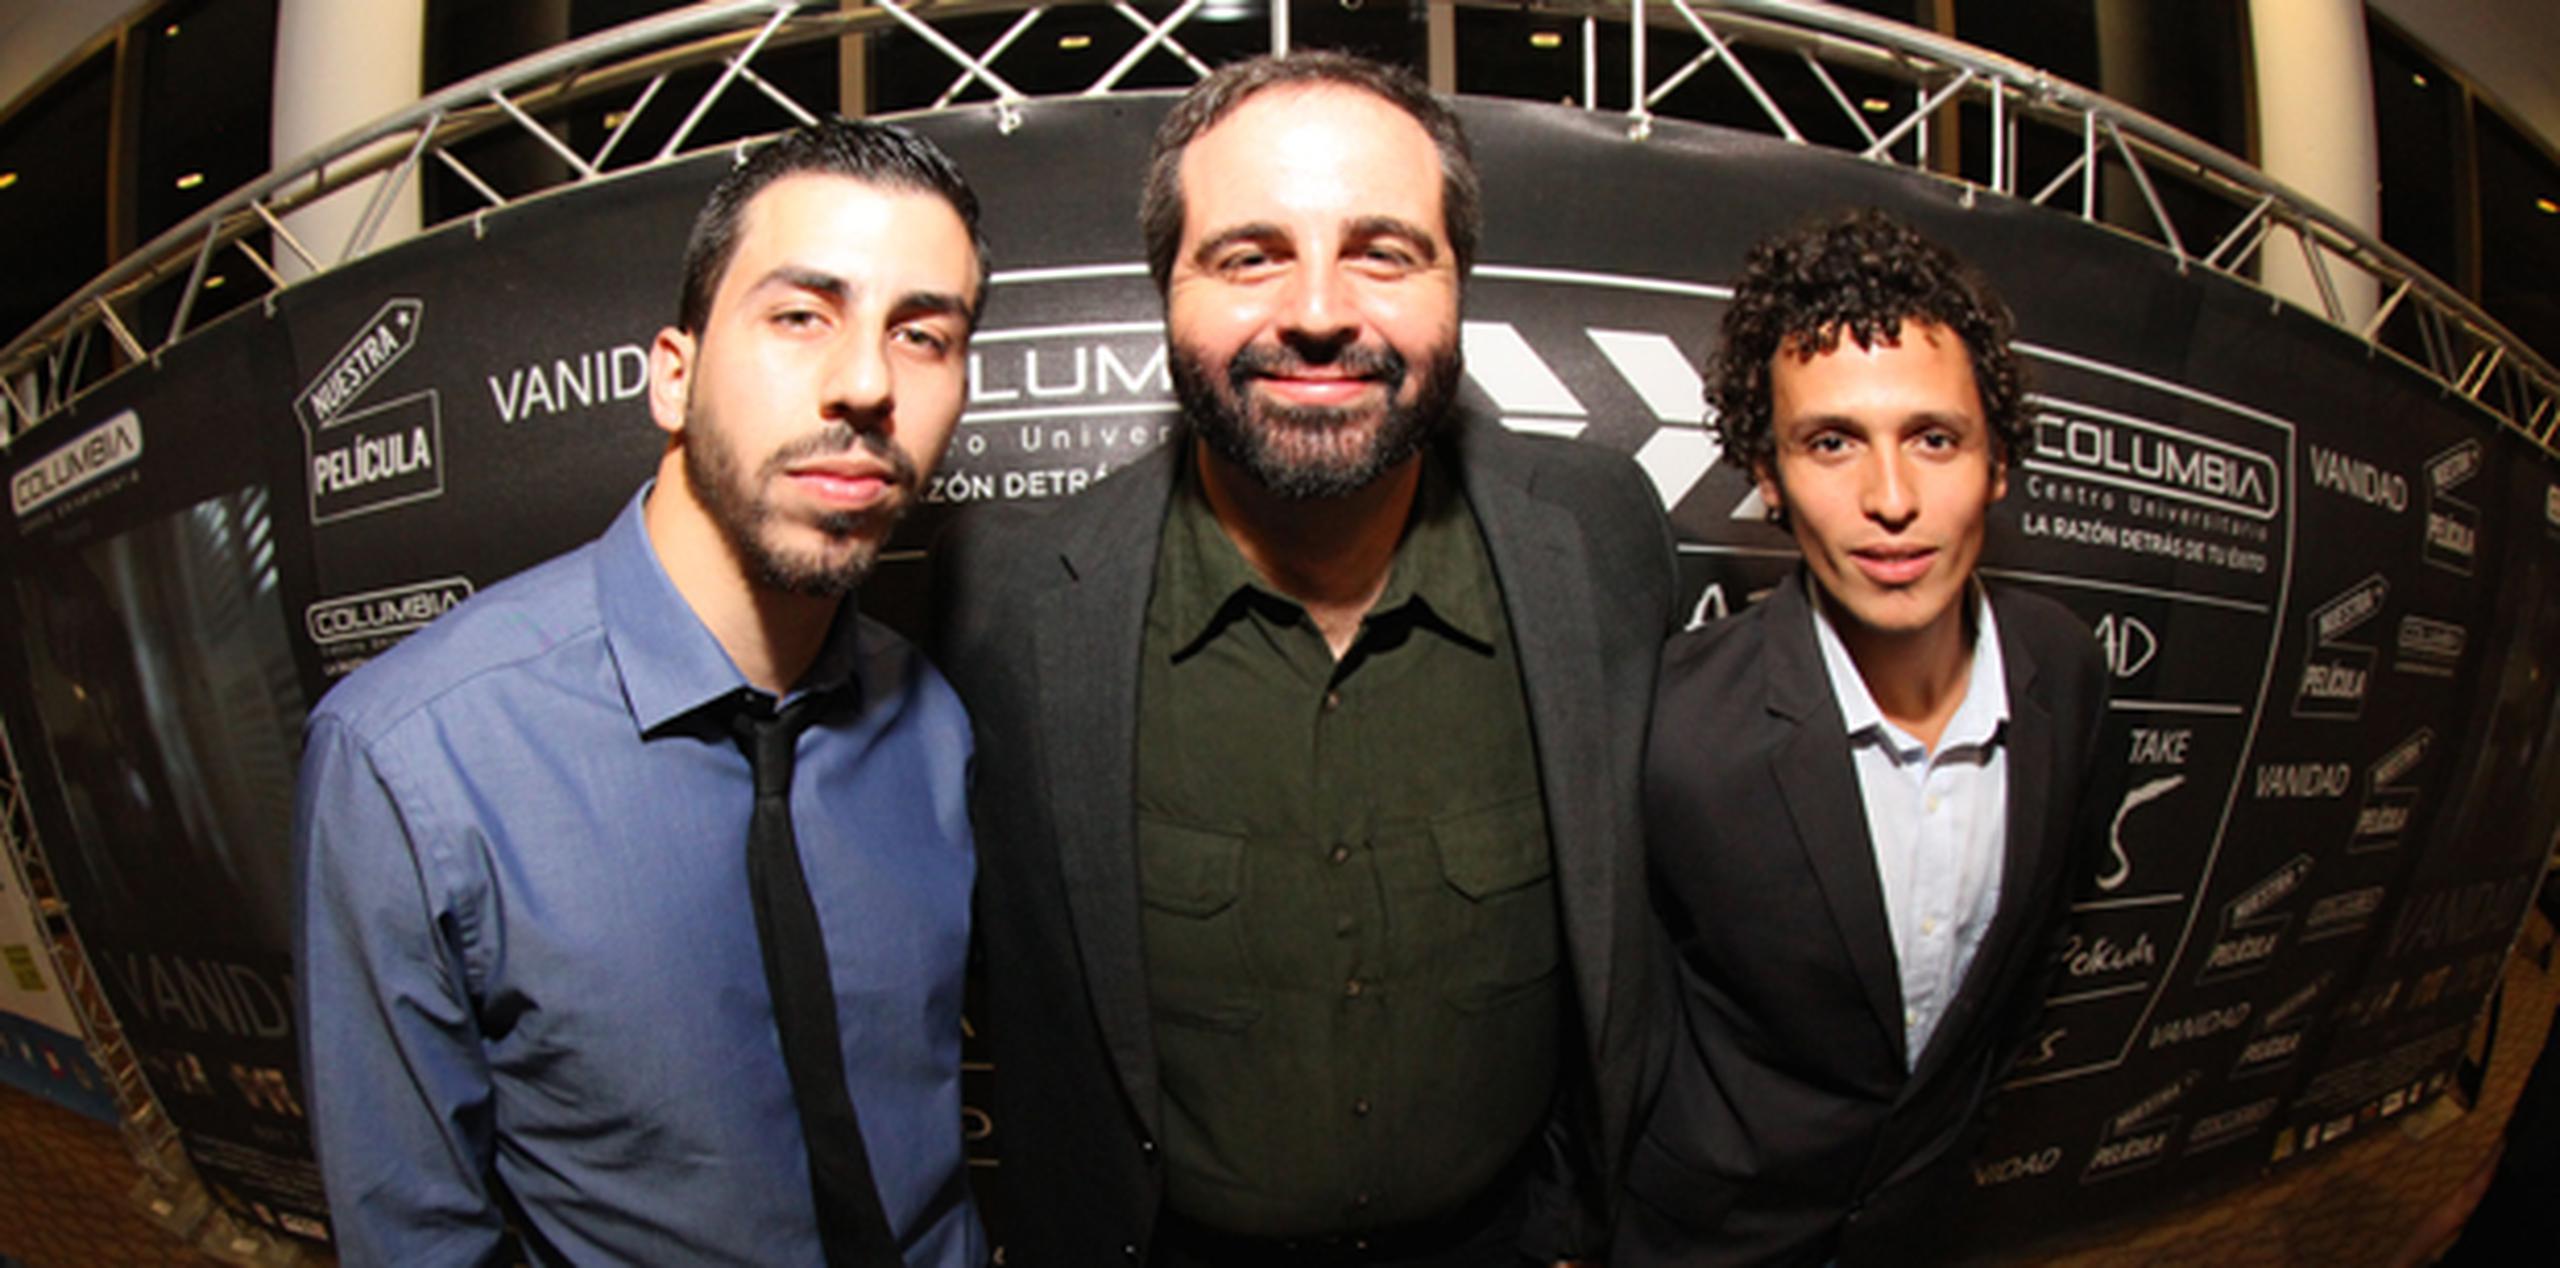 El director del cortometraje "Vanidad", Juanma Fernández-París, flanqueado por los protagonistas del filme, Sebastián Vázquez y Mickey Negrón. (Suministrada)